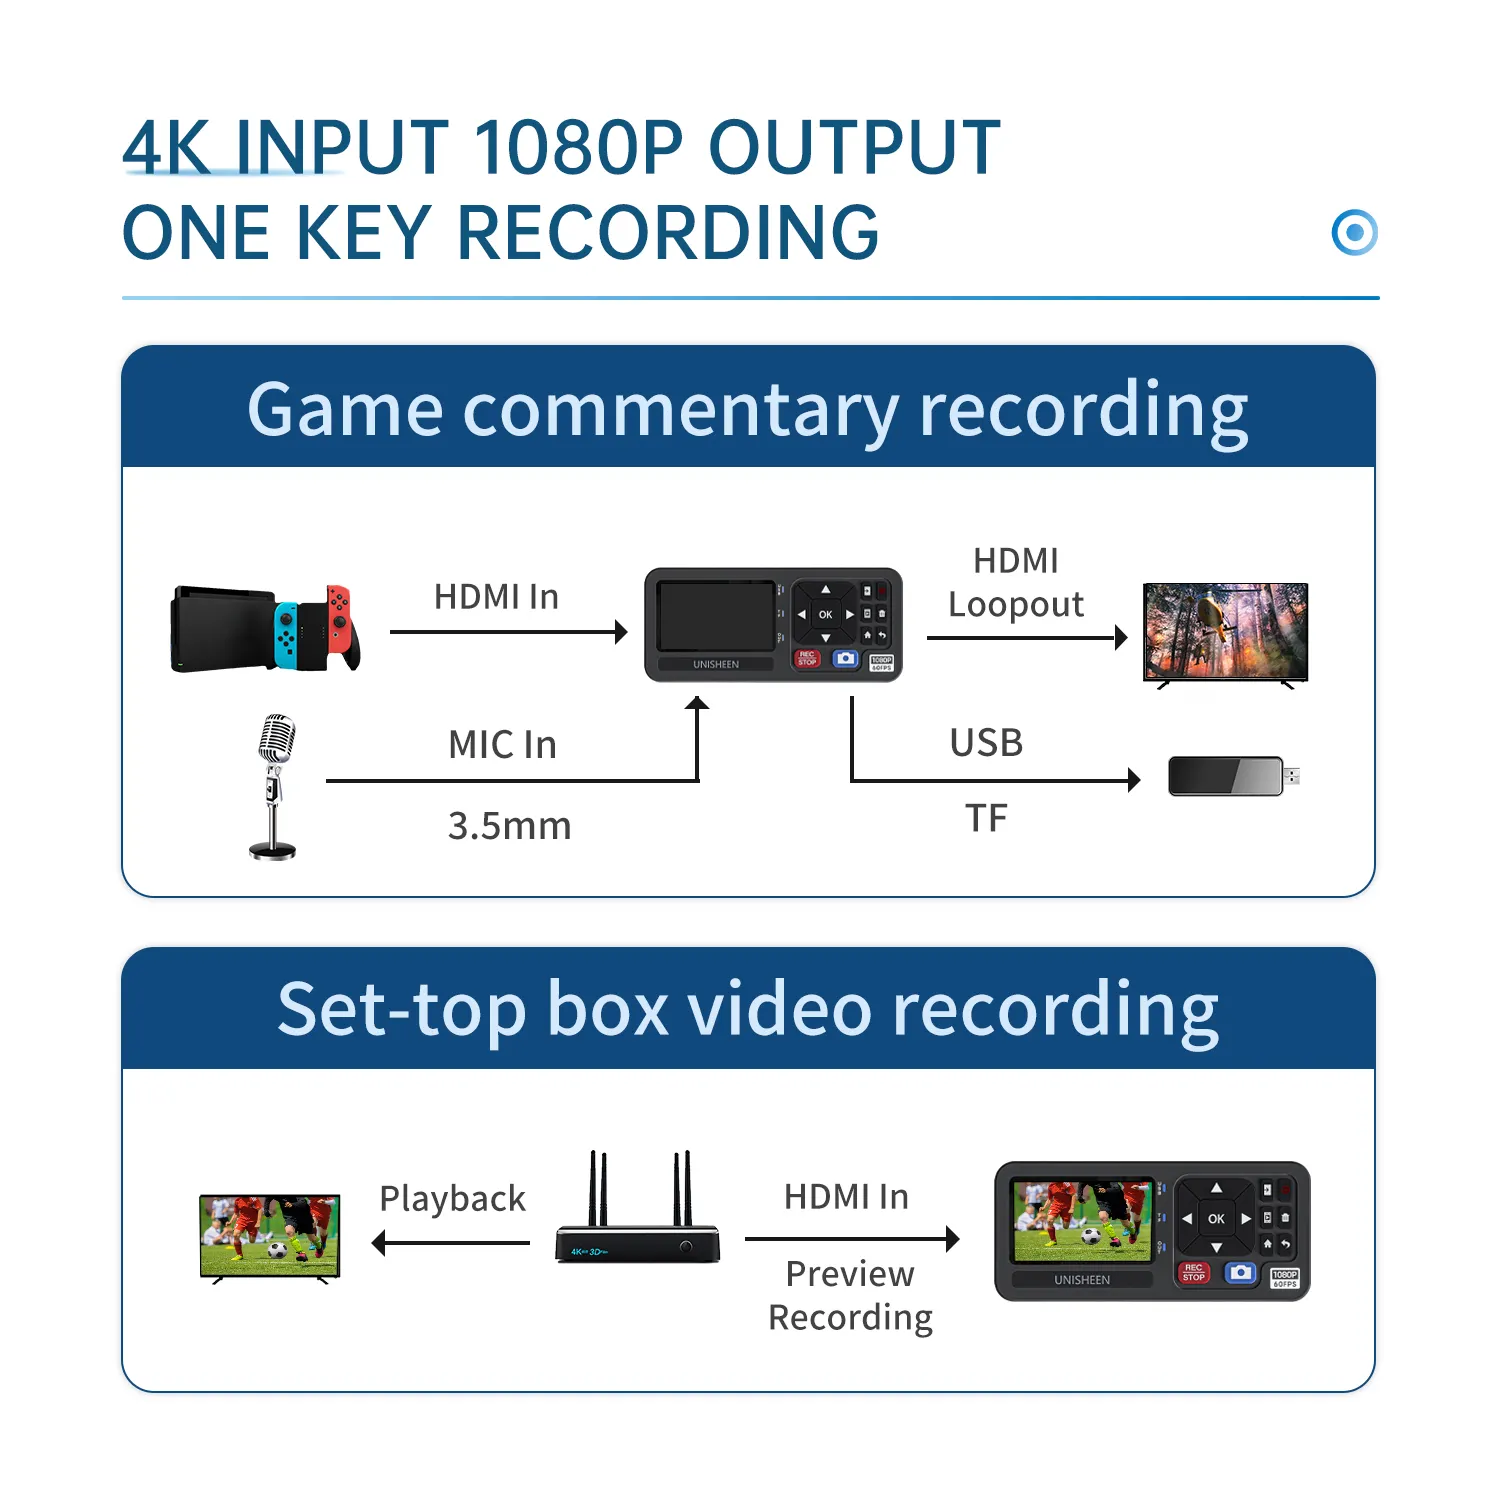 メーカーミニサイズスタンドアローン内視鏡切り替え可能ビデオレコーダーVGADVI HDMI YPbPrRCAカメラ4KキャプチャボックスVHSレコーダー